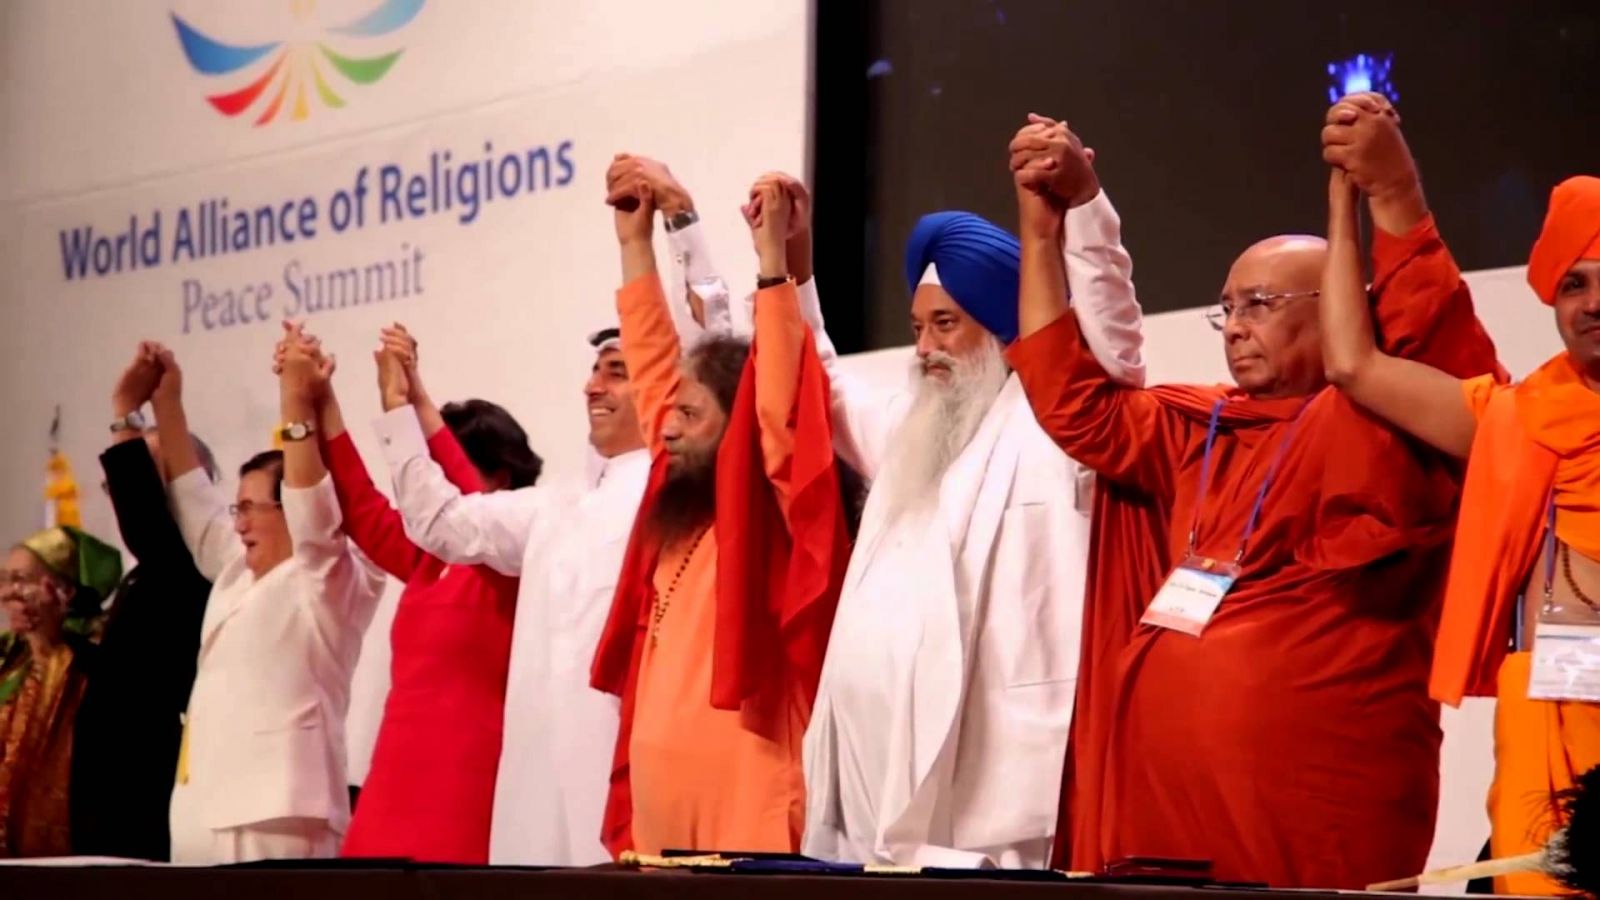 Religioni per la Pace - World Alliance of Religions for Peace Summit